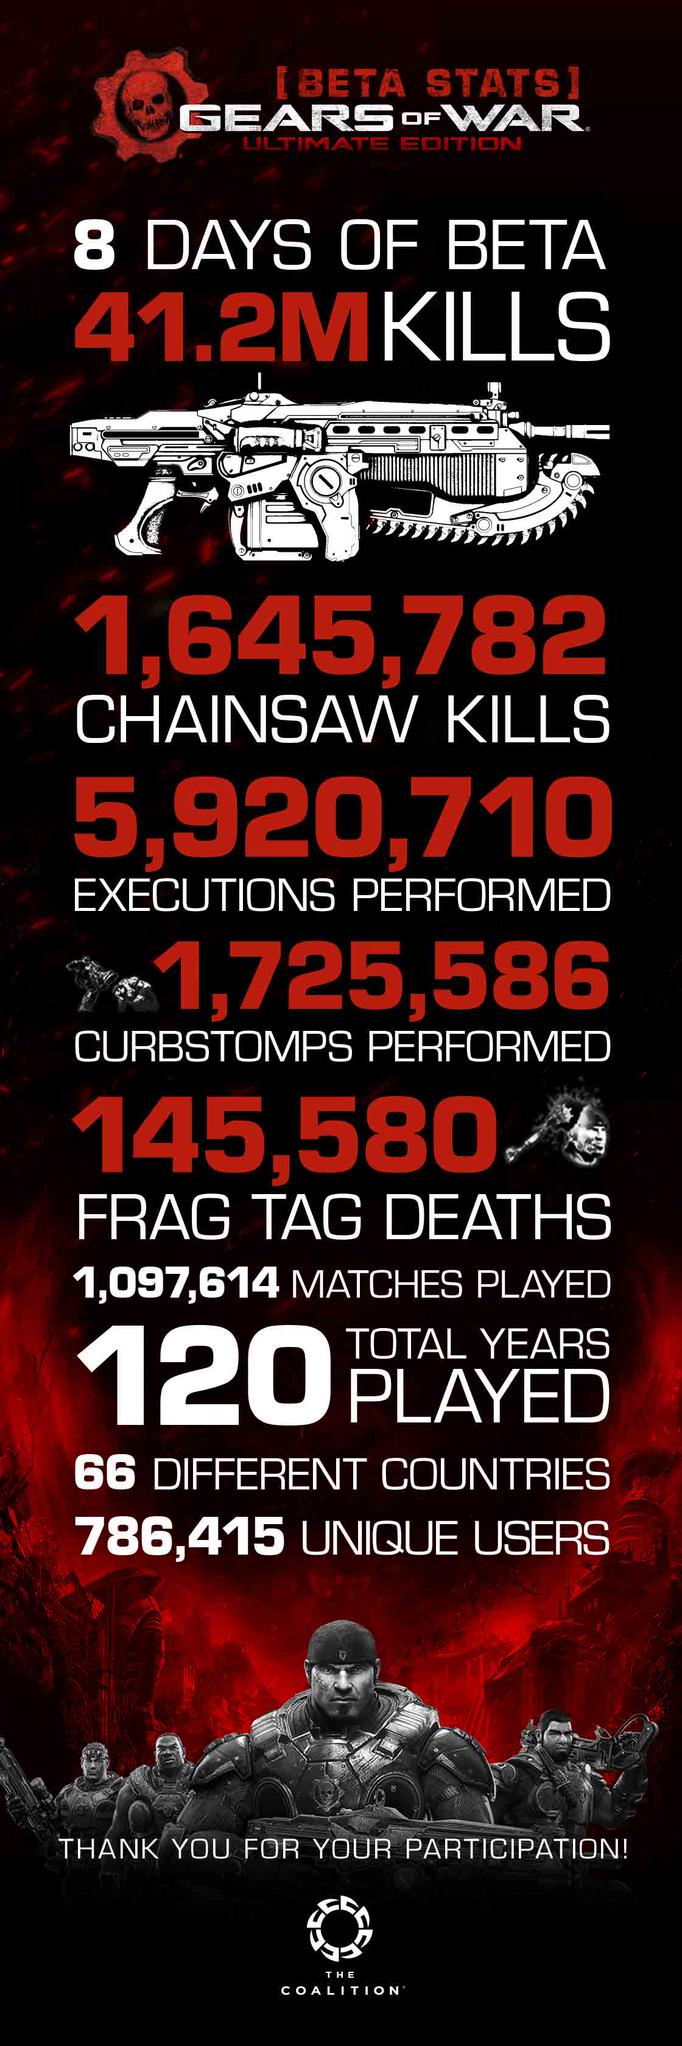 Gears of War Ultimate Edition : Après la bêta vient l'infographie